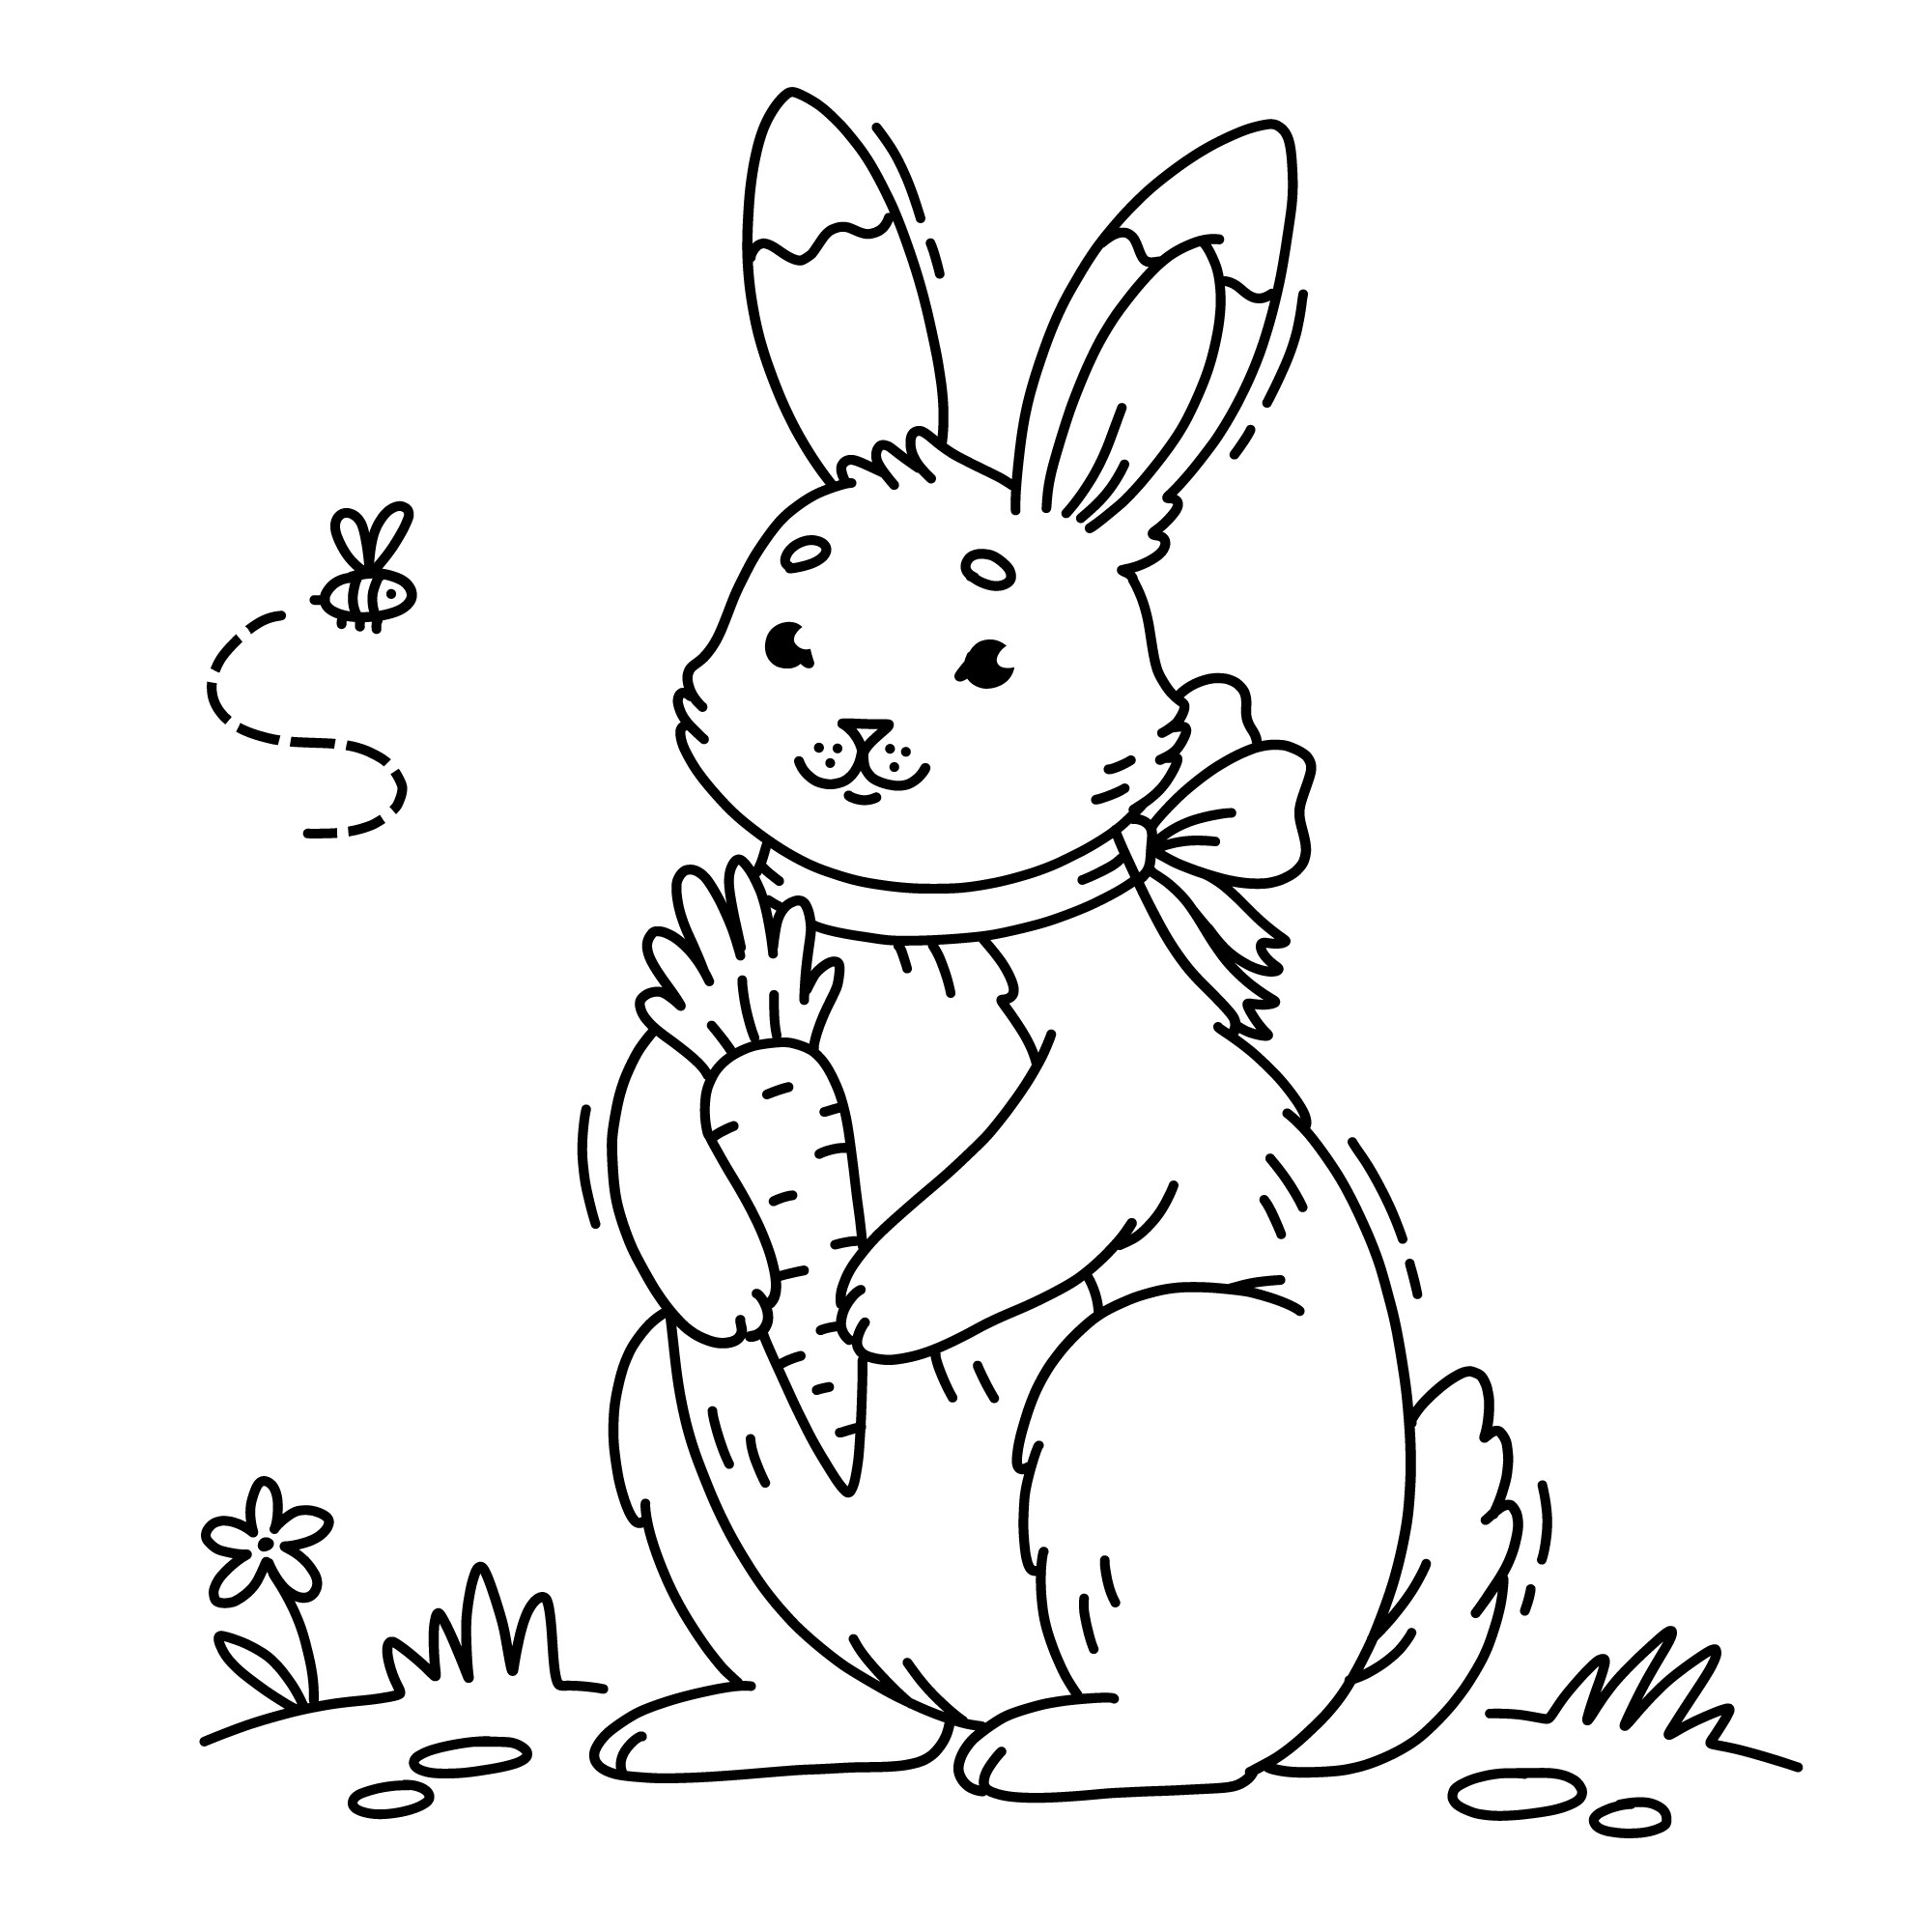 Раскраска для детей: заяц с морковкой в лапах